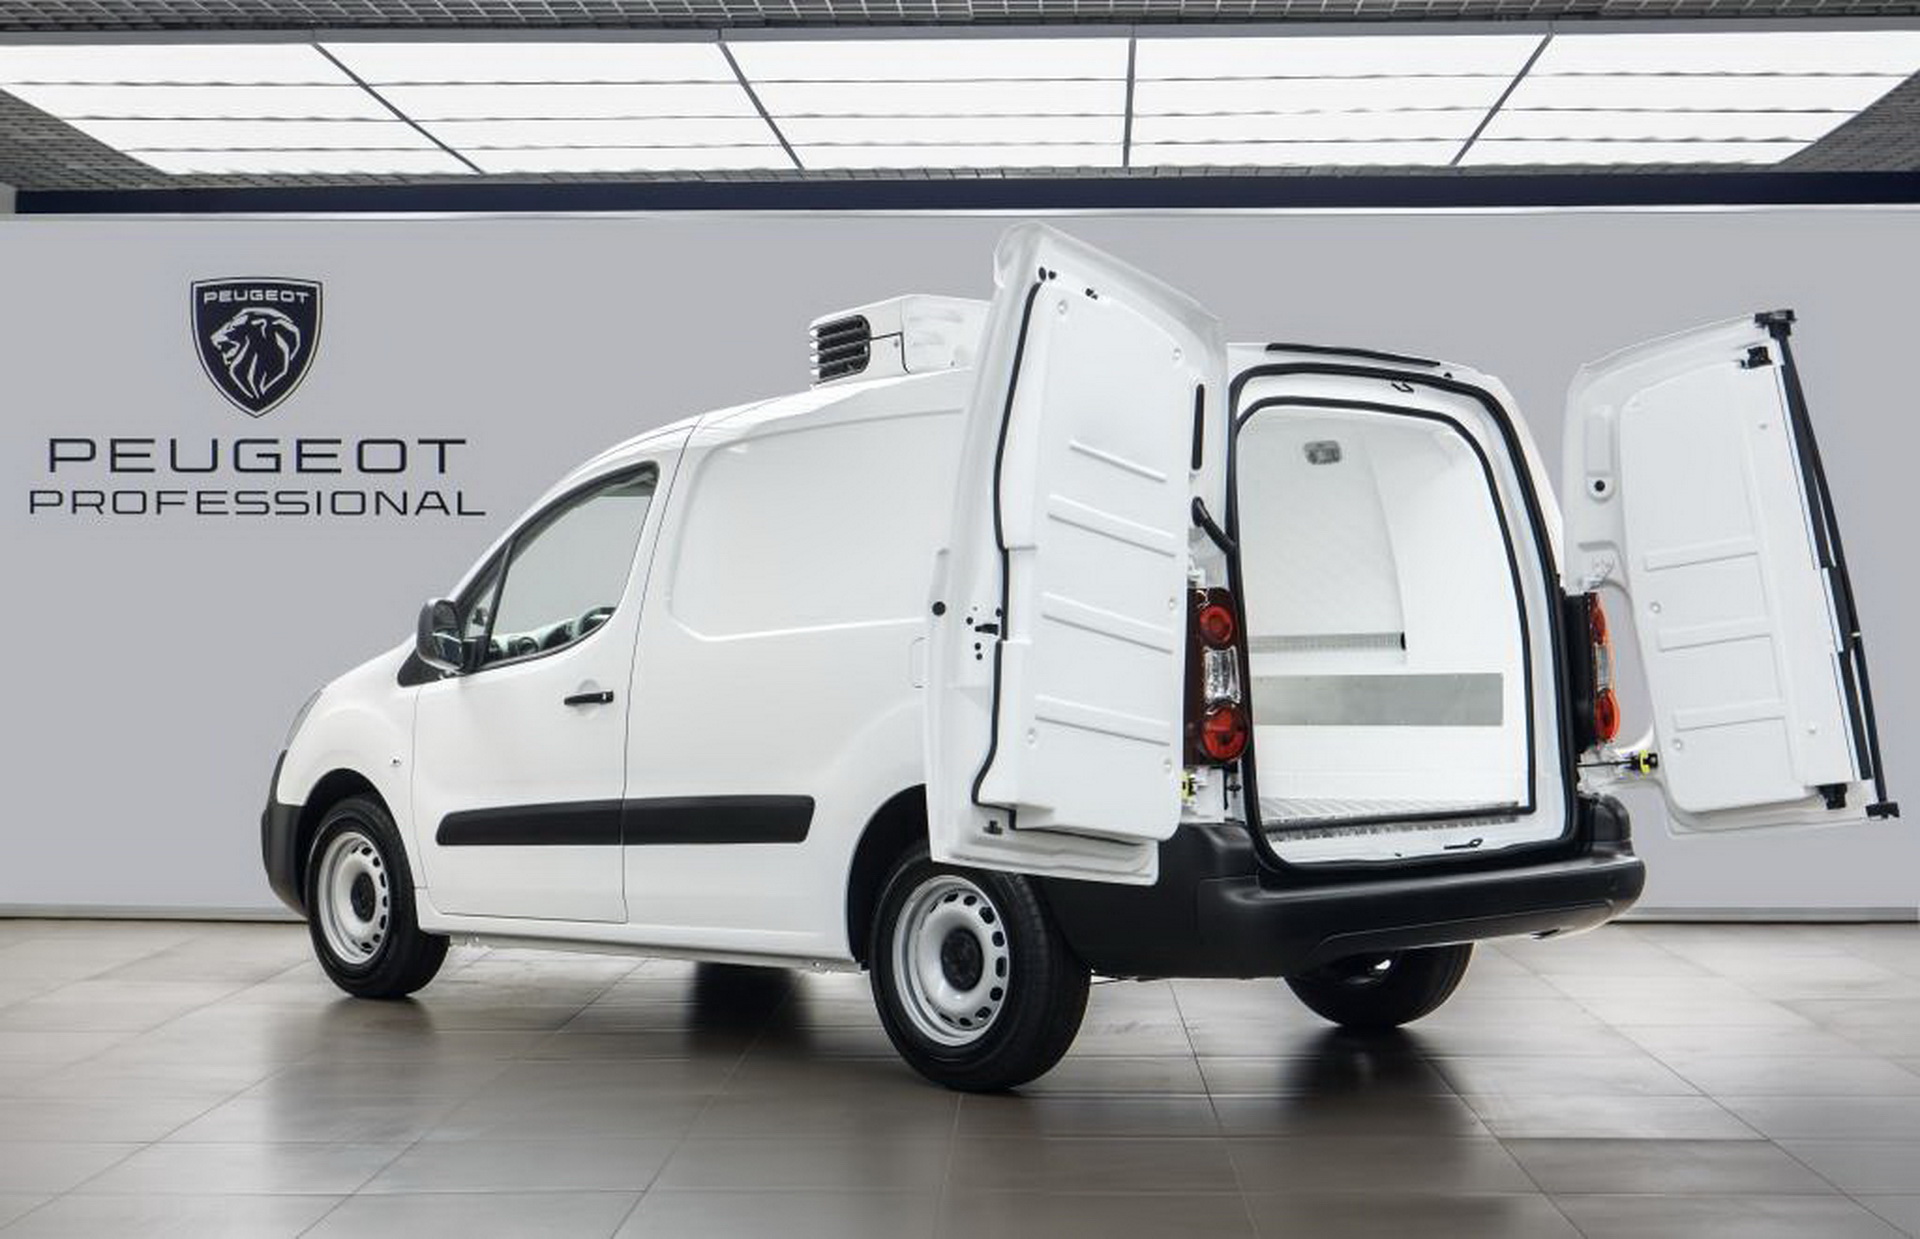 Peugeot представляет новый фургон Partner